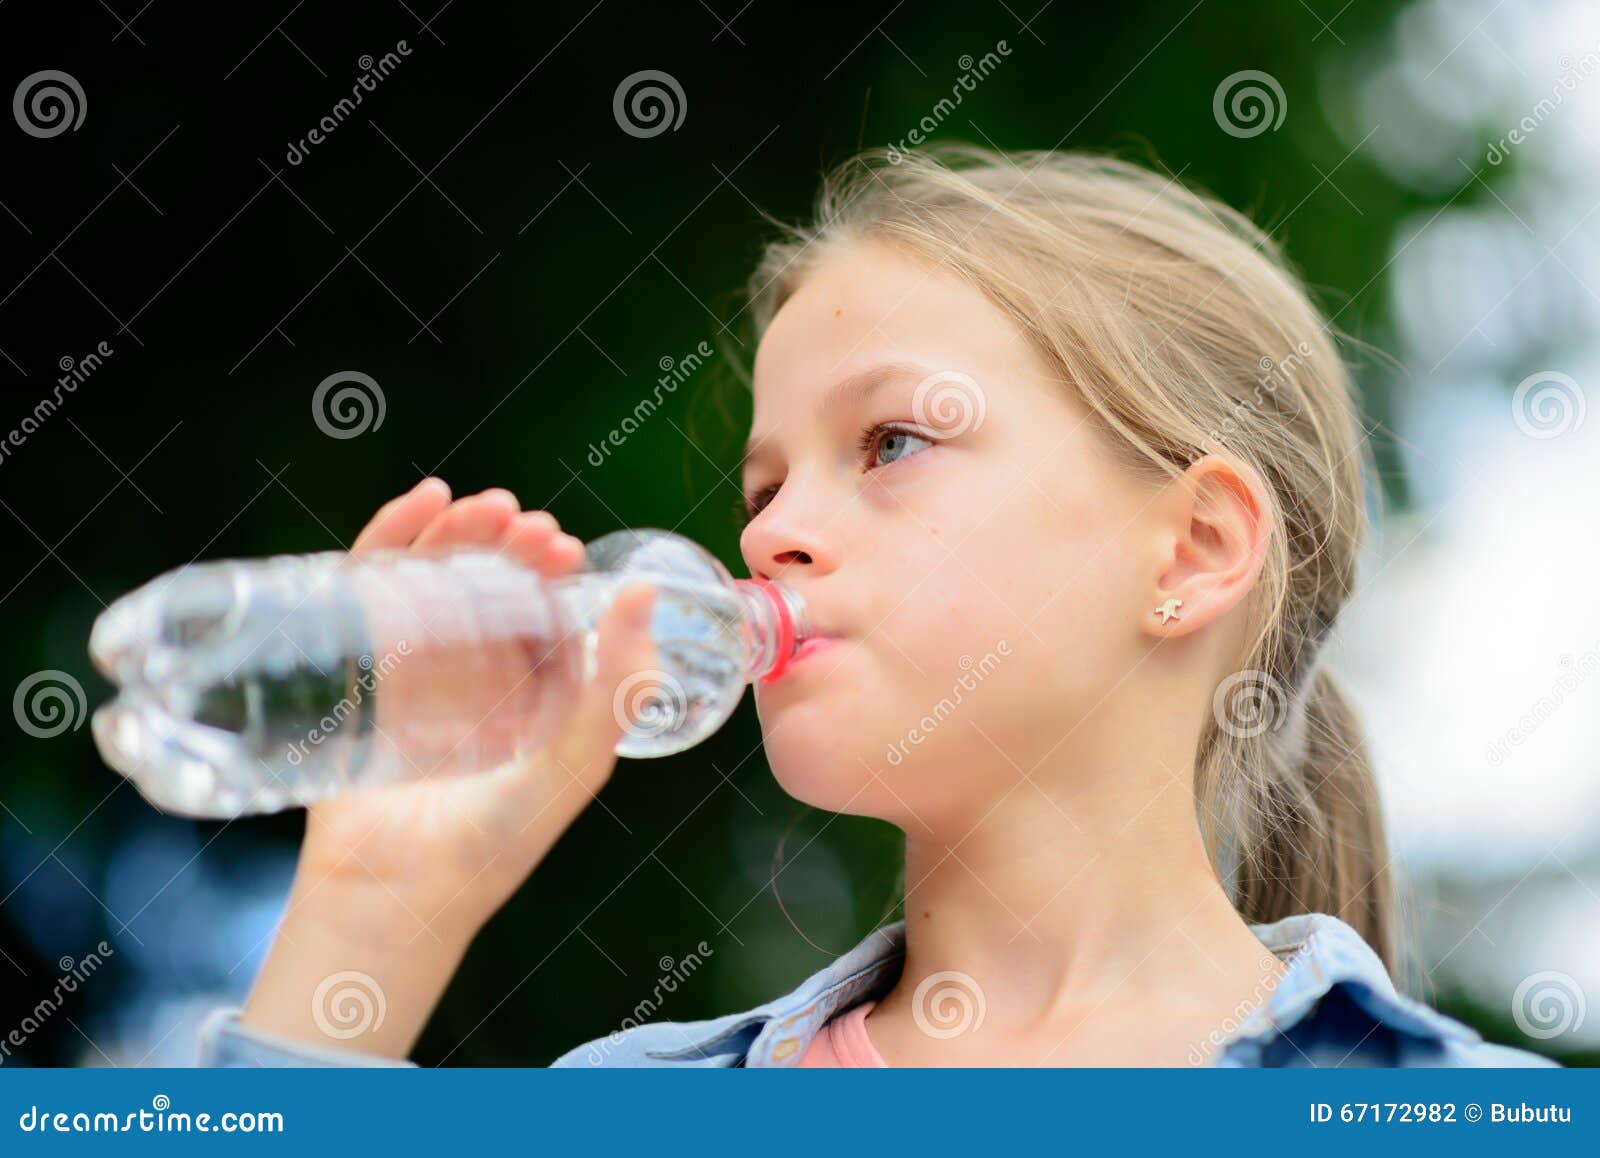 маленькая девочка пьет сперму фото 15